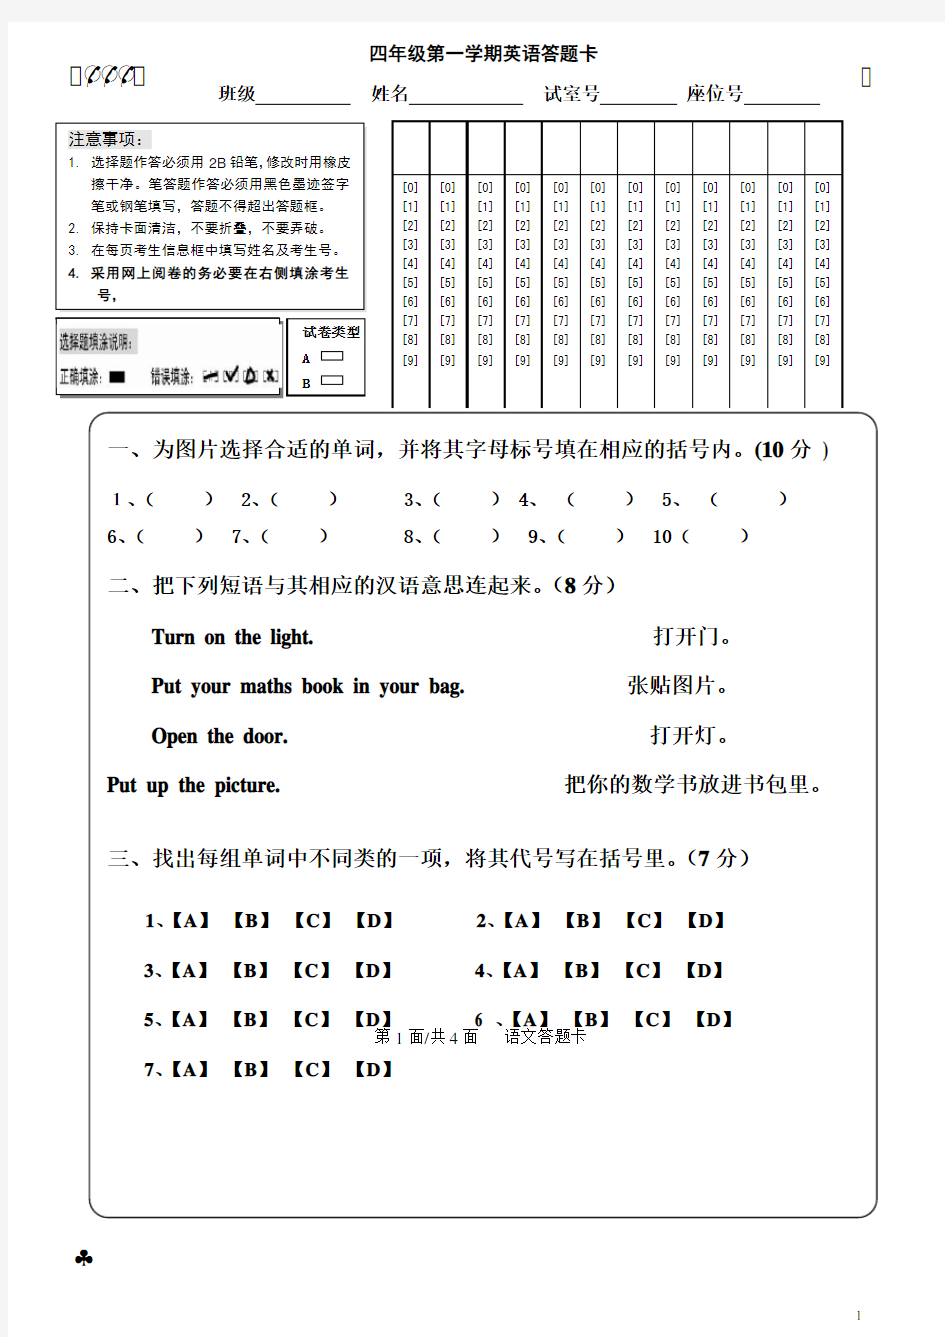 完整word版,四年级英语(上)试卷、答题卡1(1)